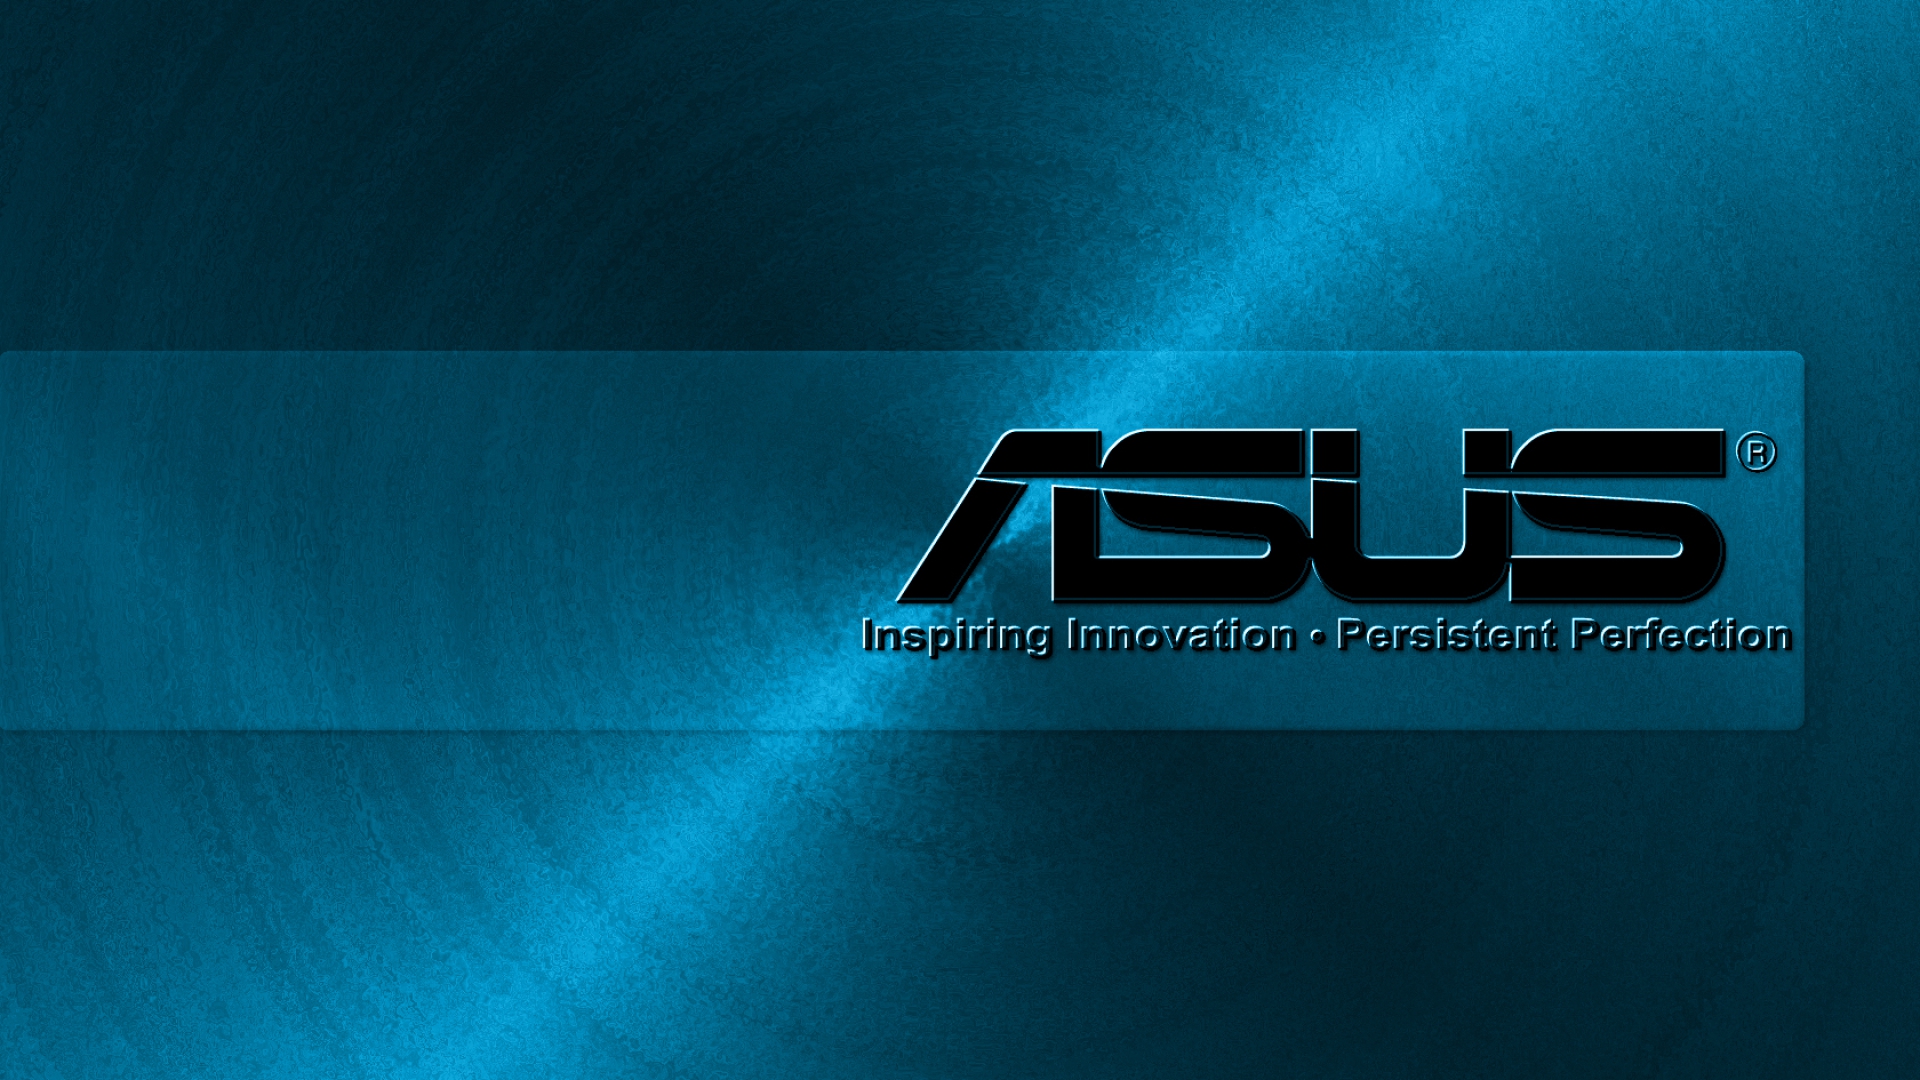 Asus hình nền: Thỏa sức tùy chỉnh cho màn hình máy tính của bạn với bộ sưu tập hình nền Asus độc đáo. Từ các mẫu hình ảnh đơn giản đến những đường nét tinh xảo, hình nền Asus mang đến sự sang trọng và phong cách cho màn hình của bạn.